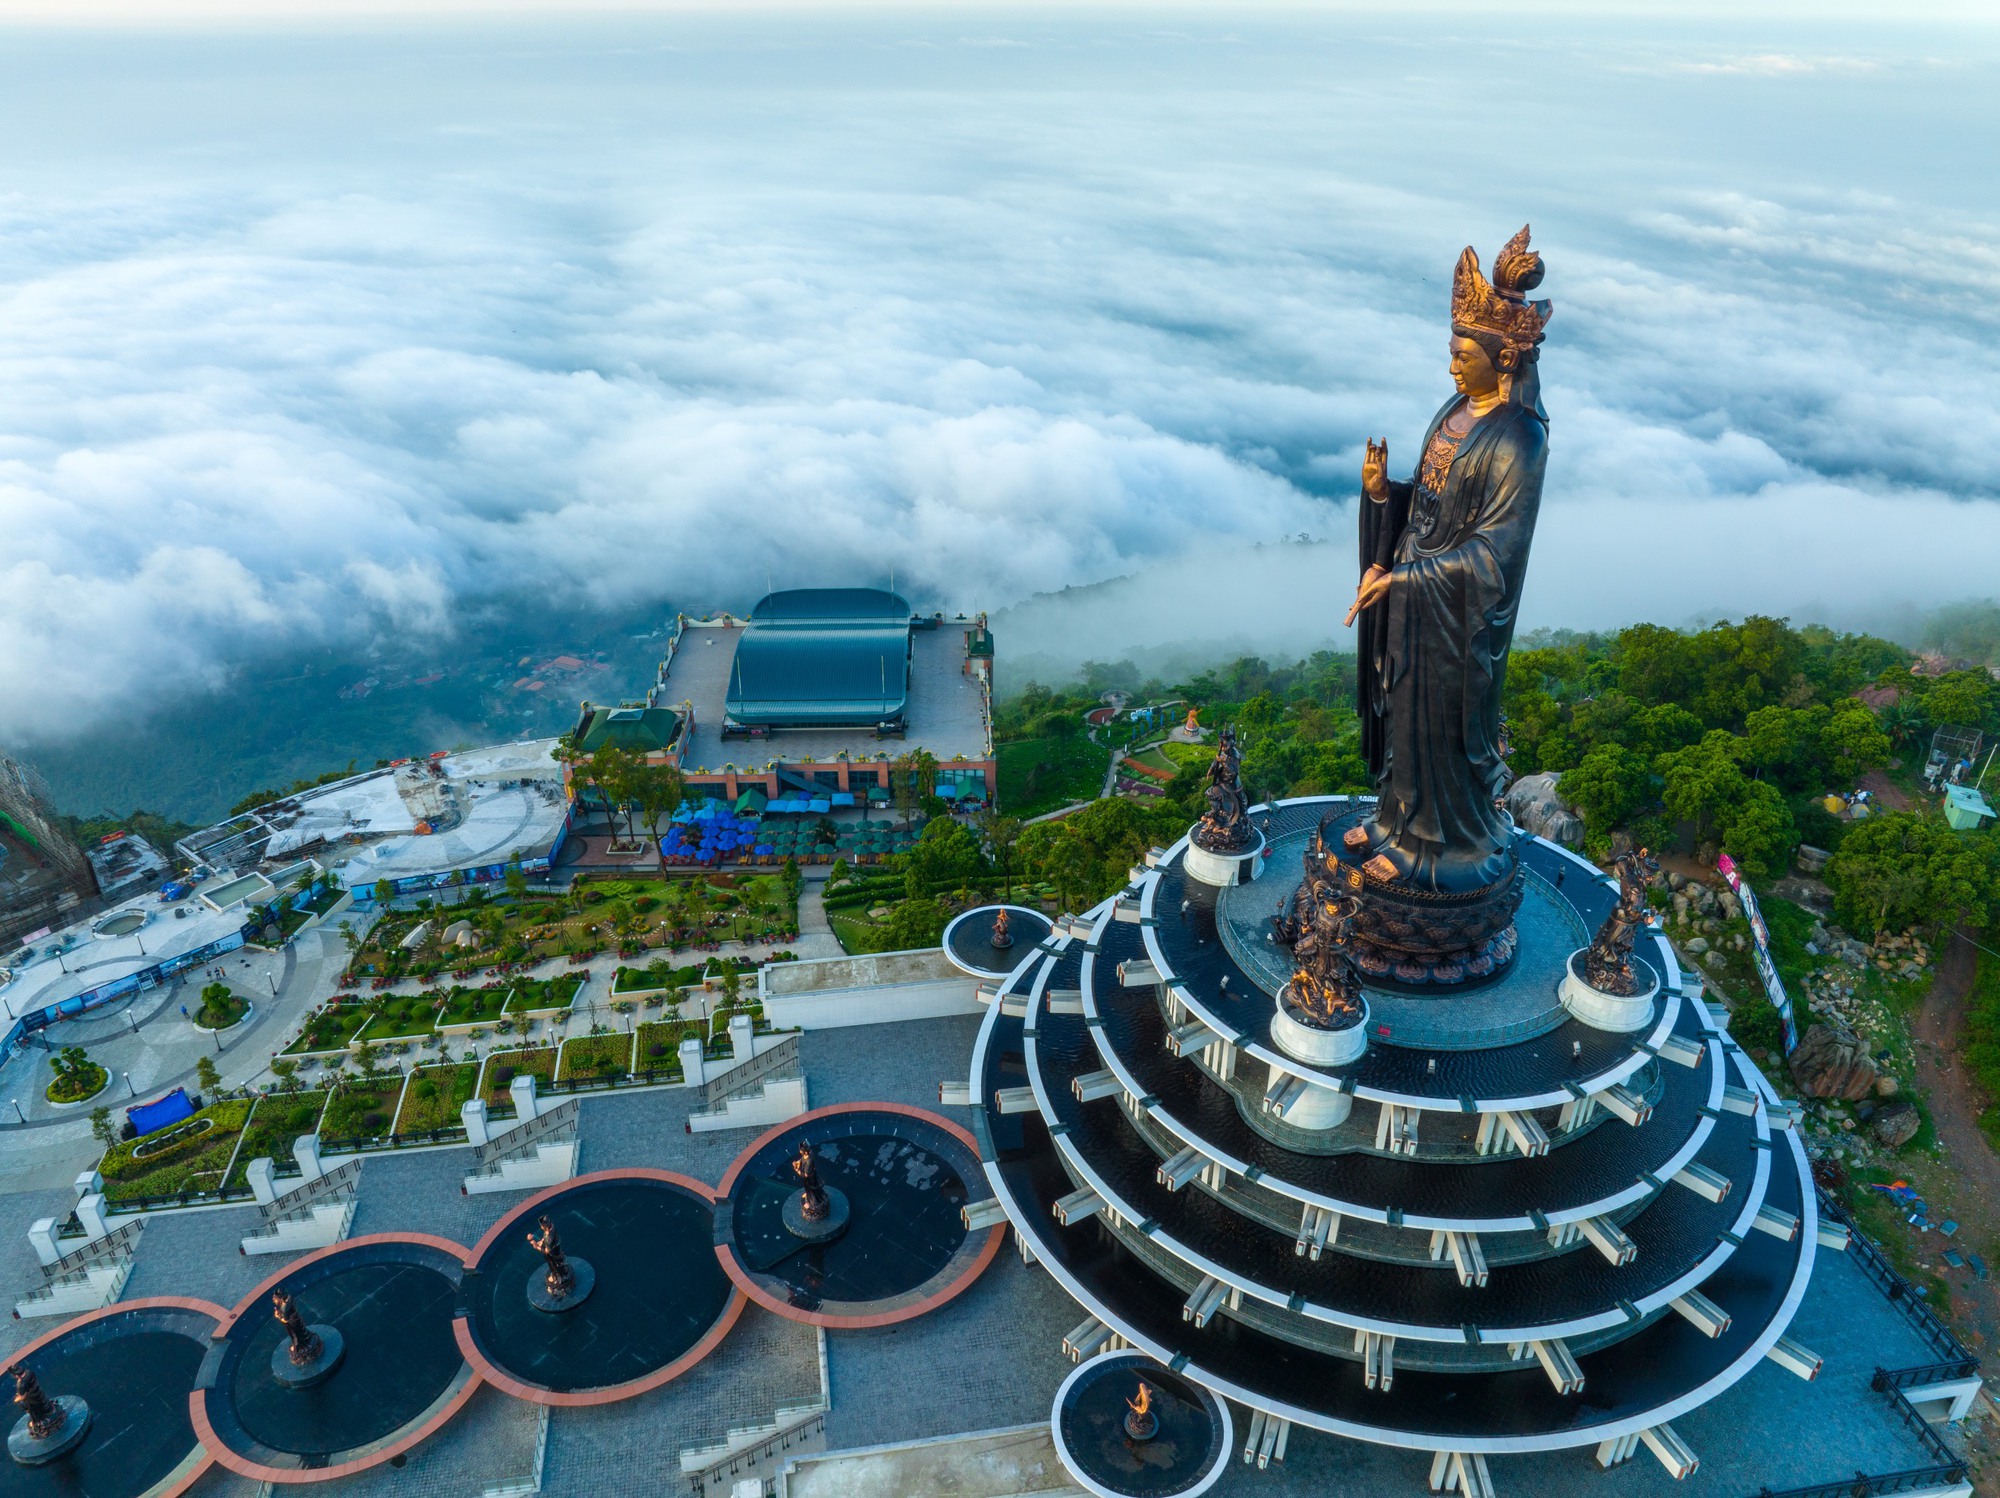 Vì sao núi Bà Đen, nơi có tượng Phật Bà bằng đồng cao nhất Việt Nam, được mệnh danh là “Đệ nhất Thiên Sơn”? - Ảnh 9.